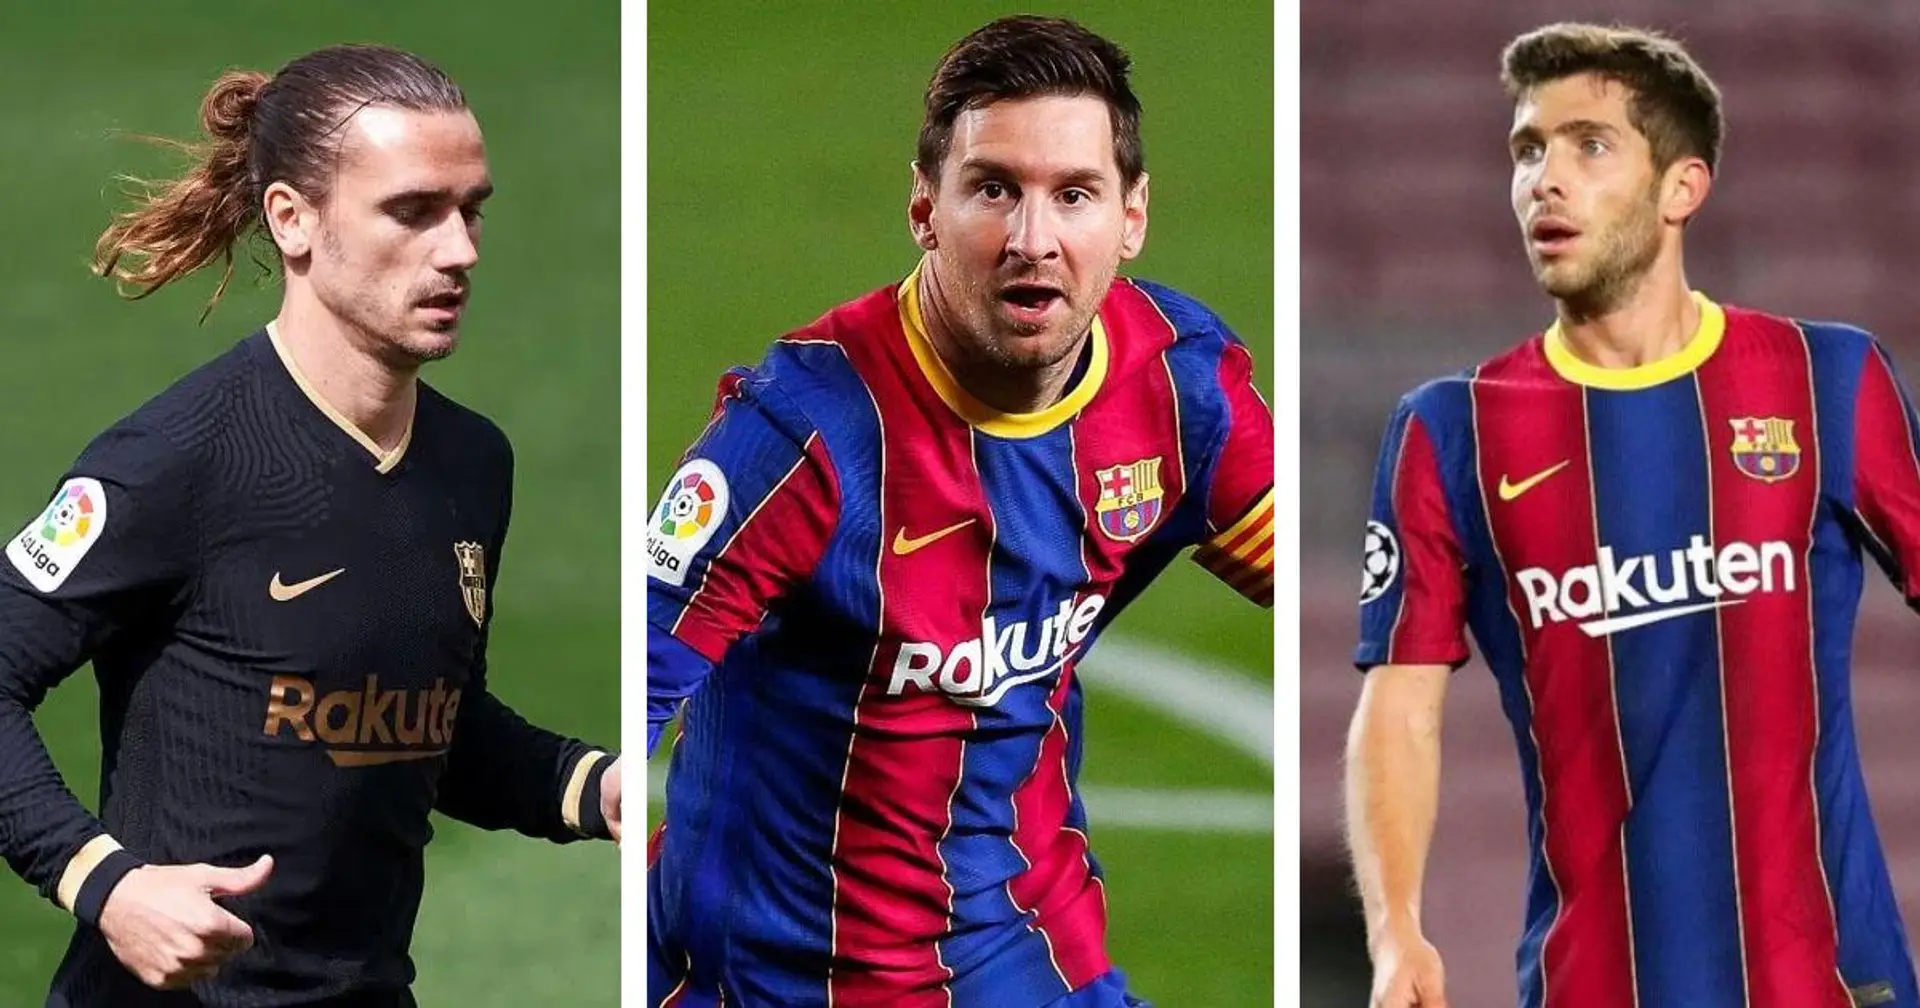 4 من لاعبي برشلونة معرضون لخطر الإيقاف و 3 قصص كبيرة أخرى ربما فاتتك